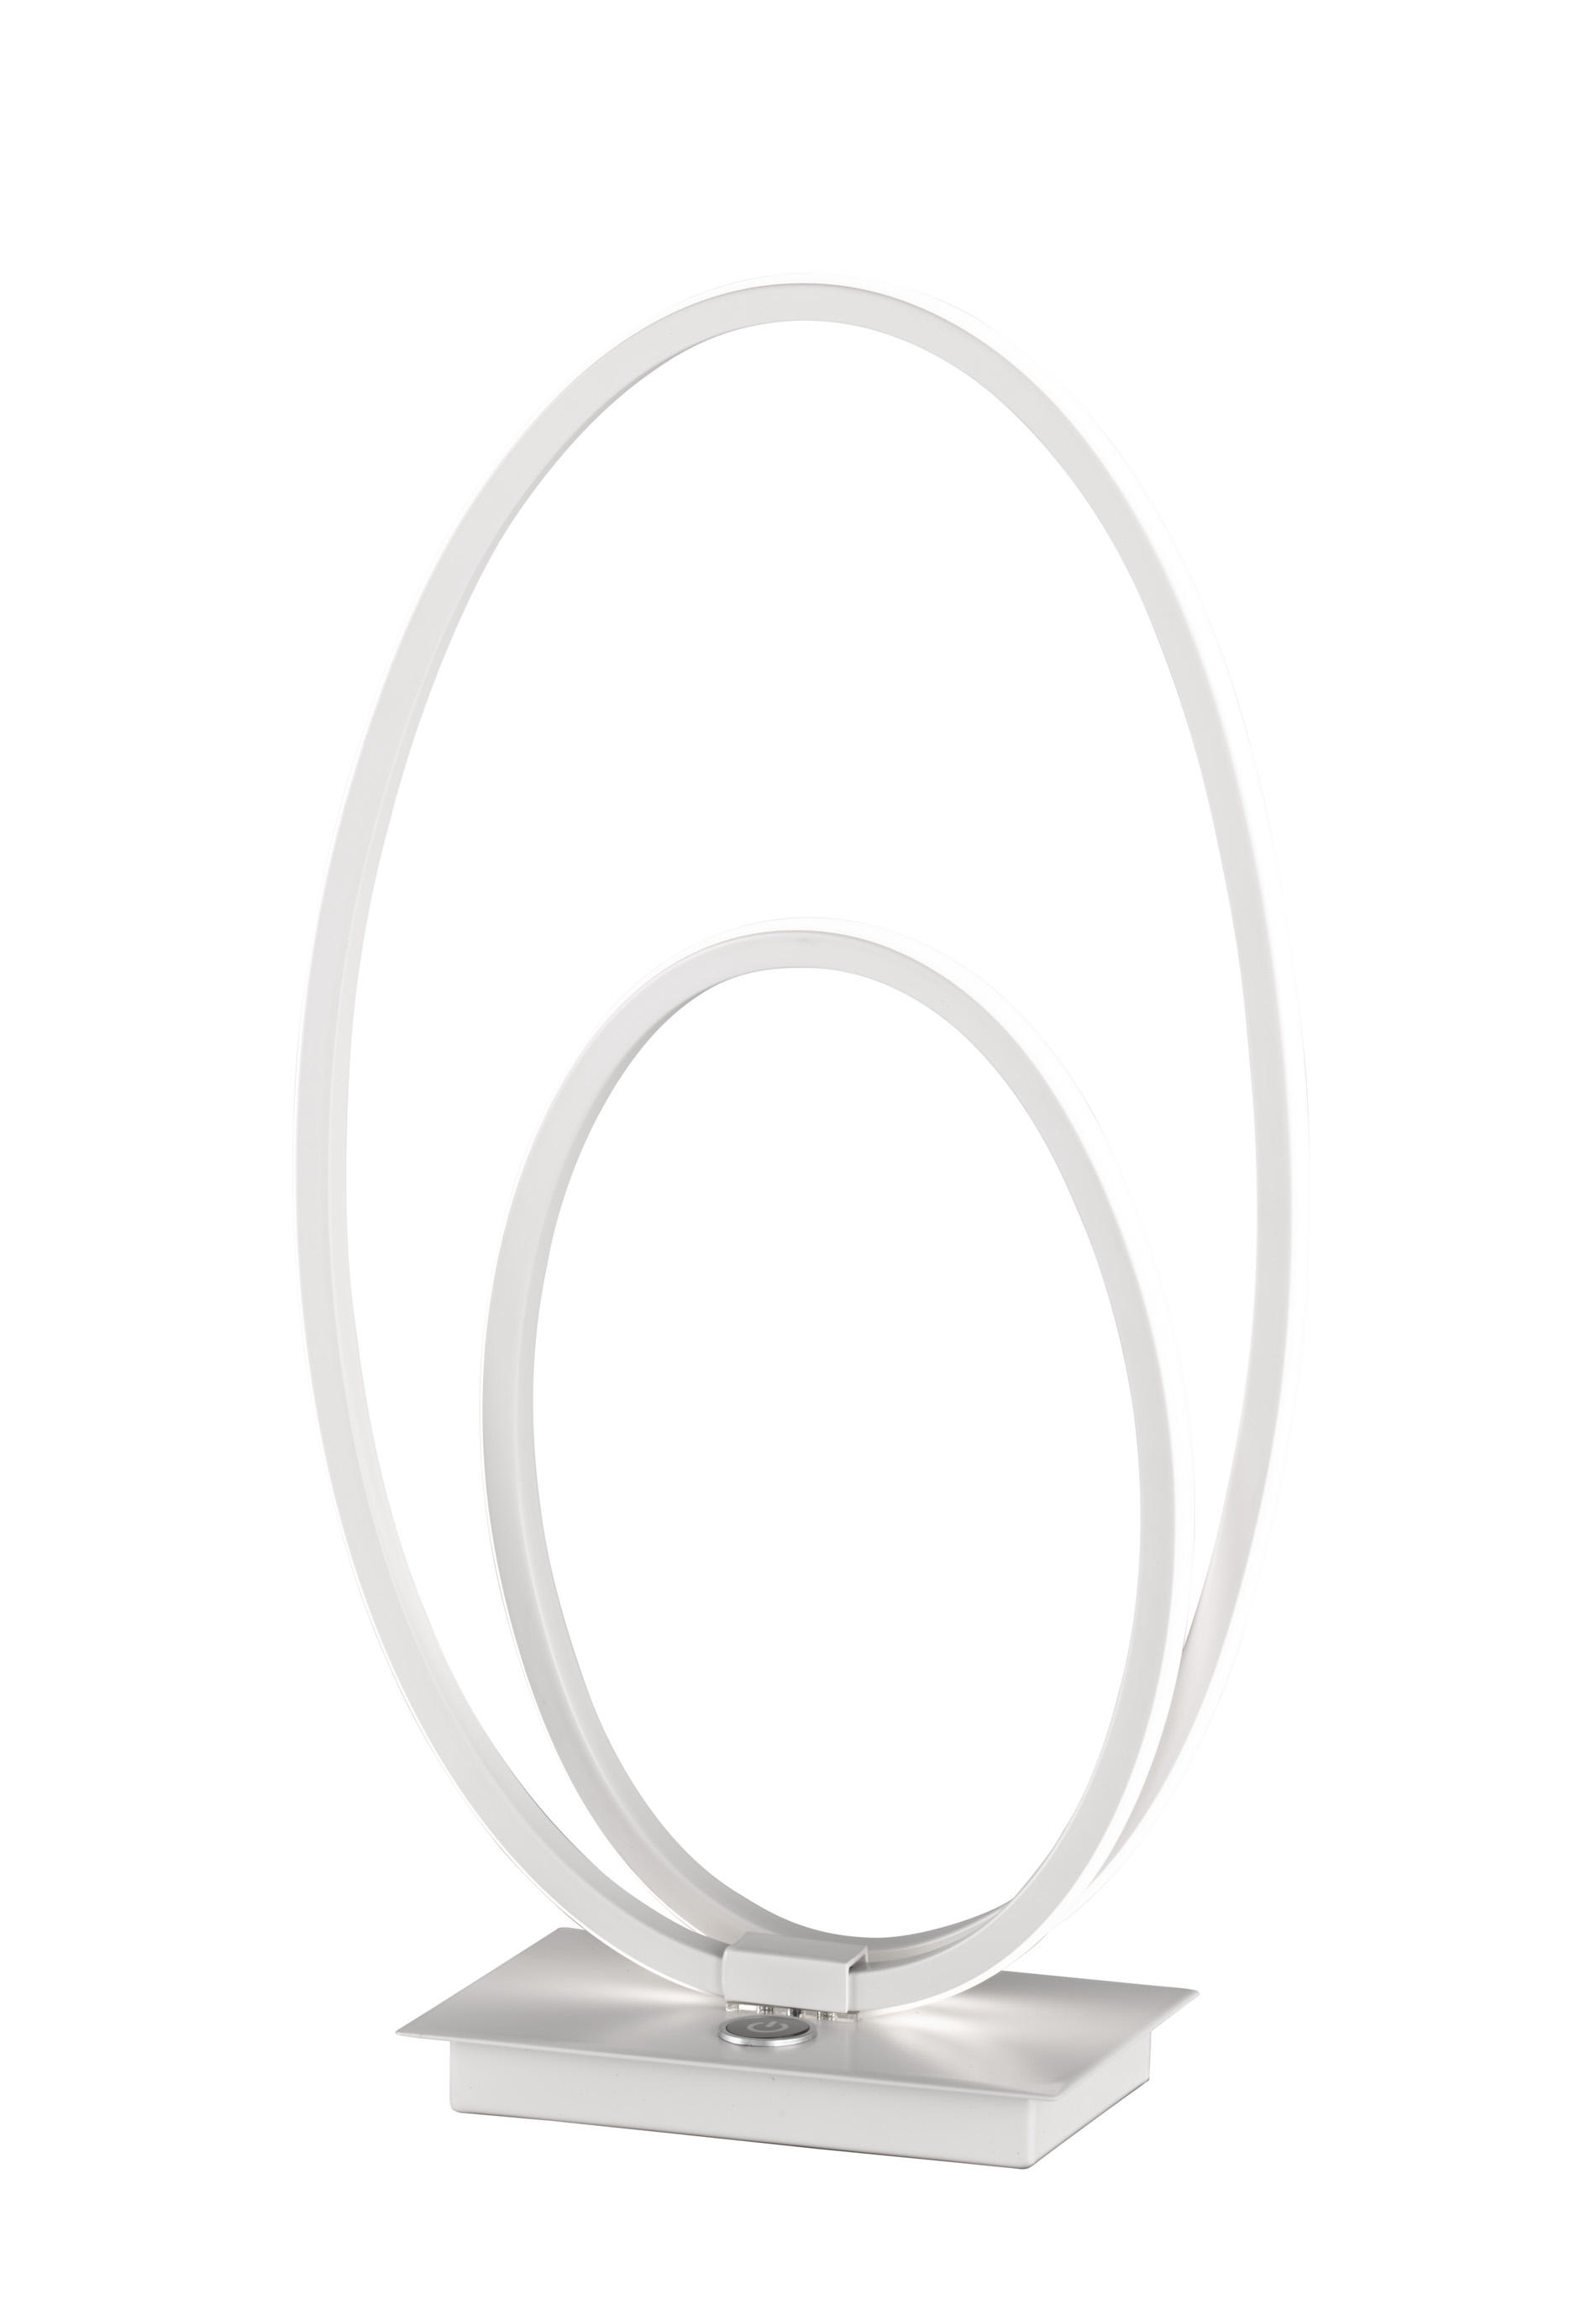 LED-TISCHLEUCHTE NIA  - Weiß, Design, Kunststoff/Metall (24,5/42/10cm) - Wofi